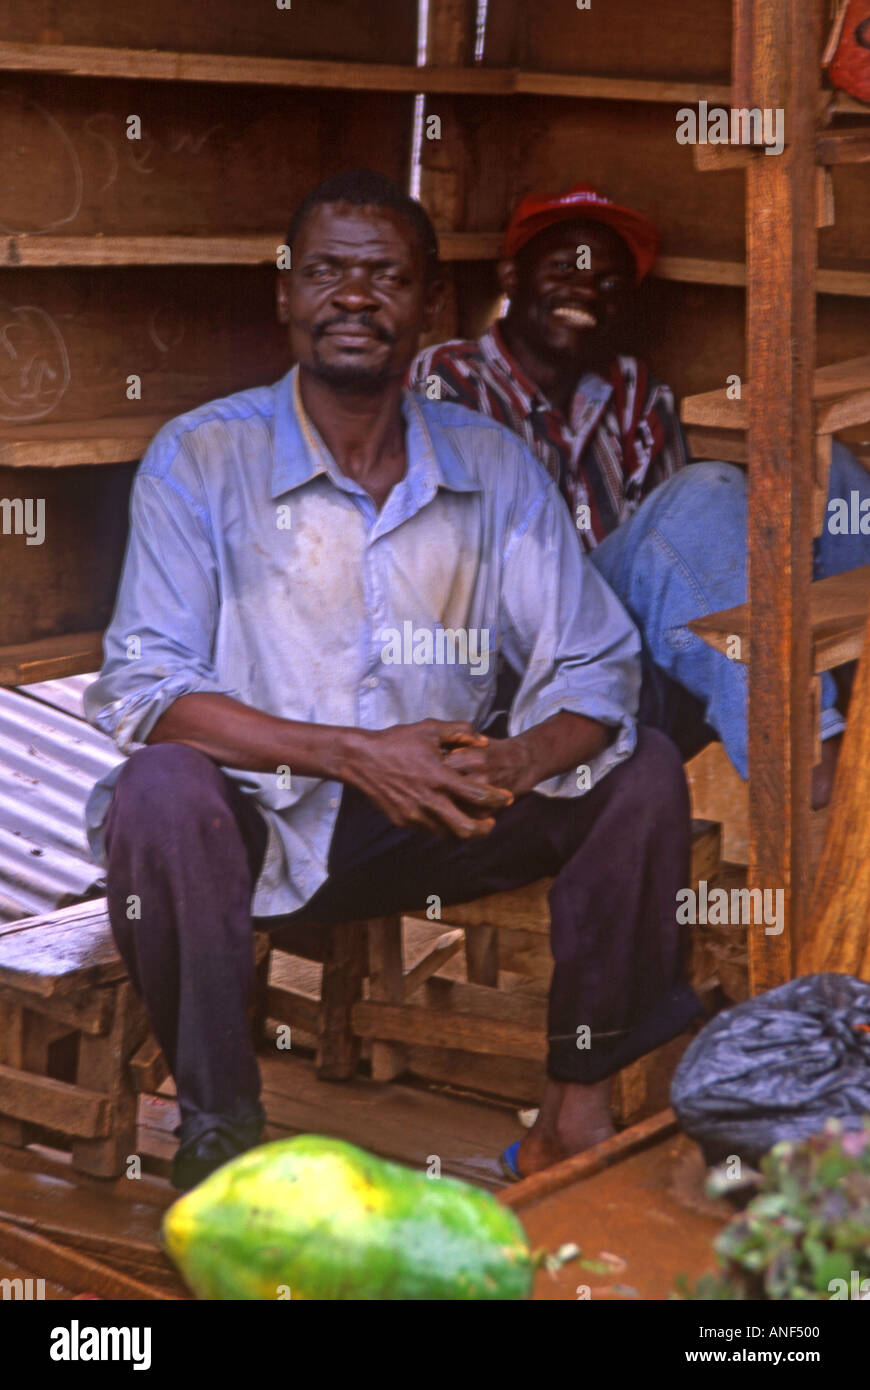 Paire de colporteur Africain noir hommes posant fièrement à l'intérieur de leur décrochage en bois mobile Dar es Salaam Tanzanie Afrique de l'Est Banque D'Images